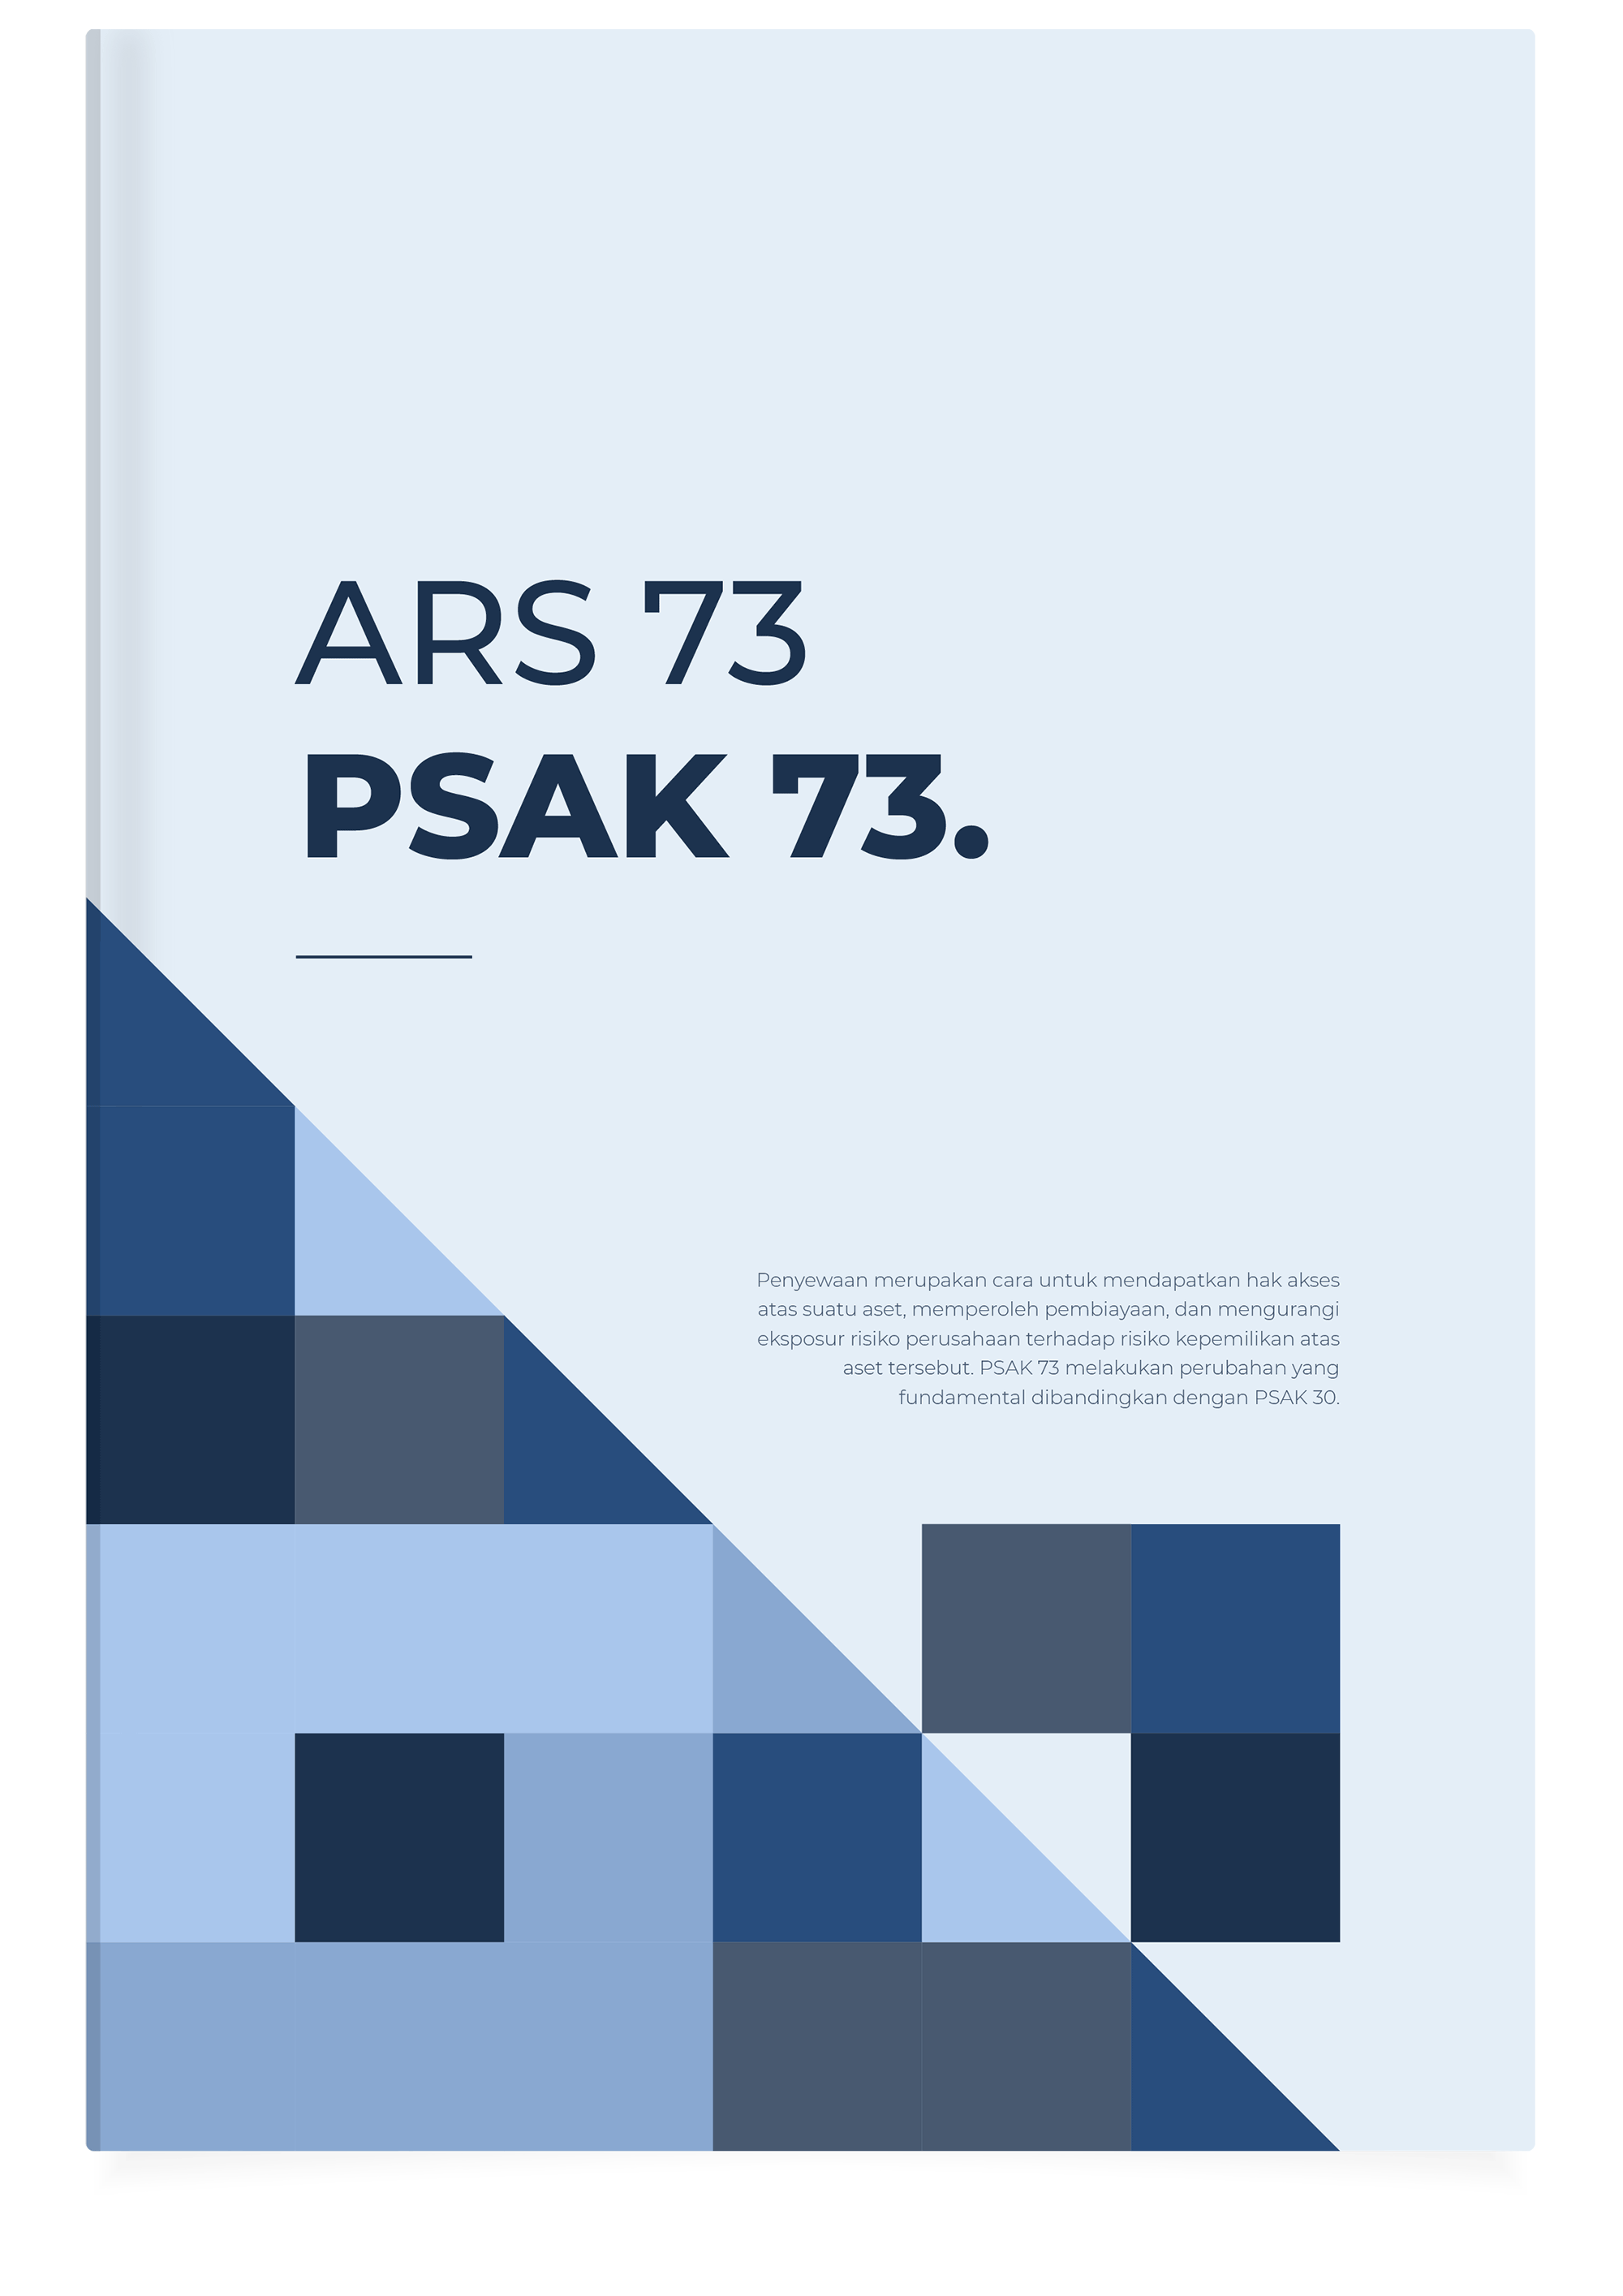 ARS 73 PSAK 73